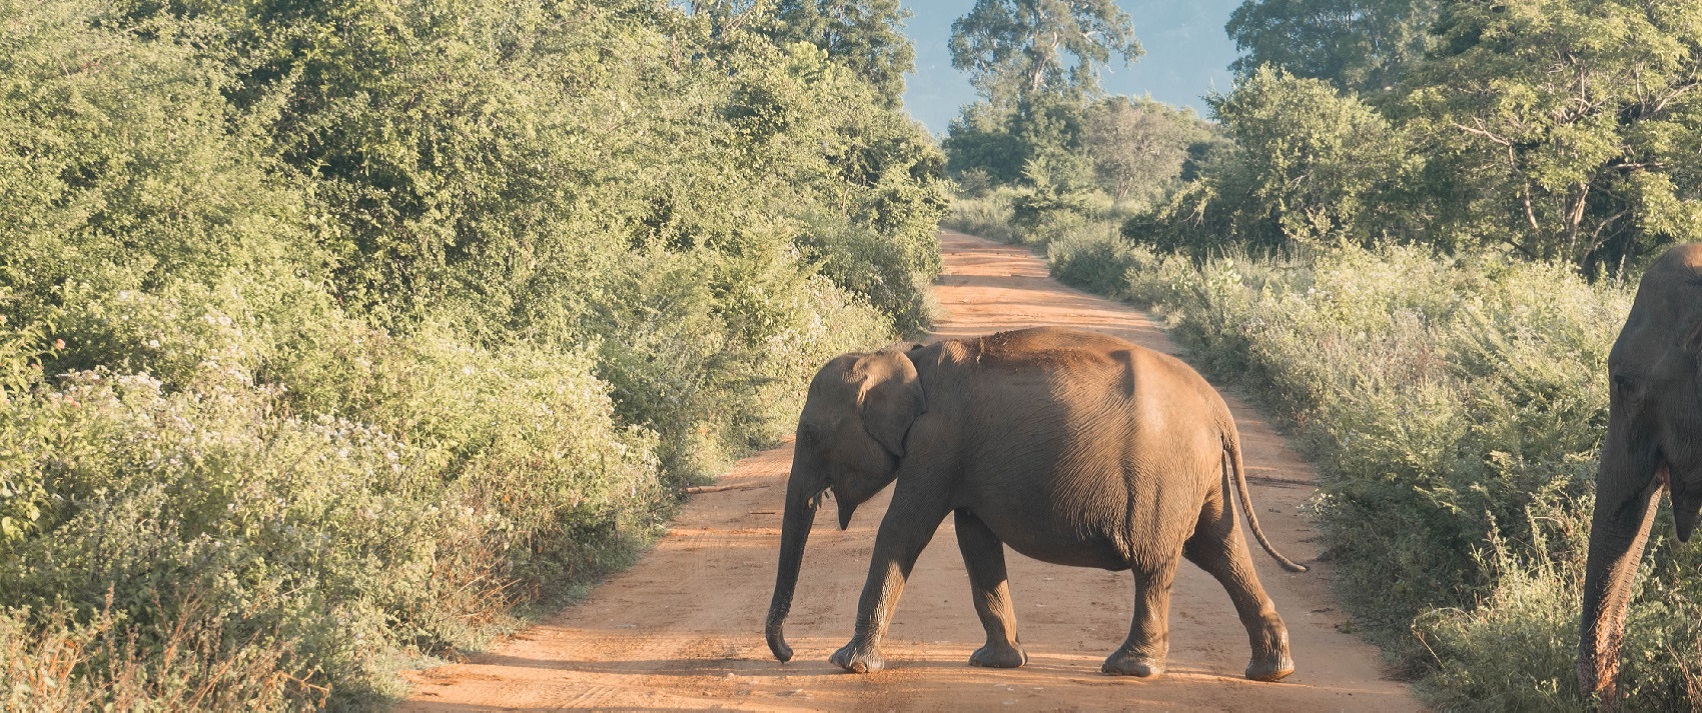 Elephant Conservation in Sri Lanka | SoulTrek Sri Lanka